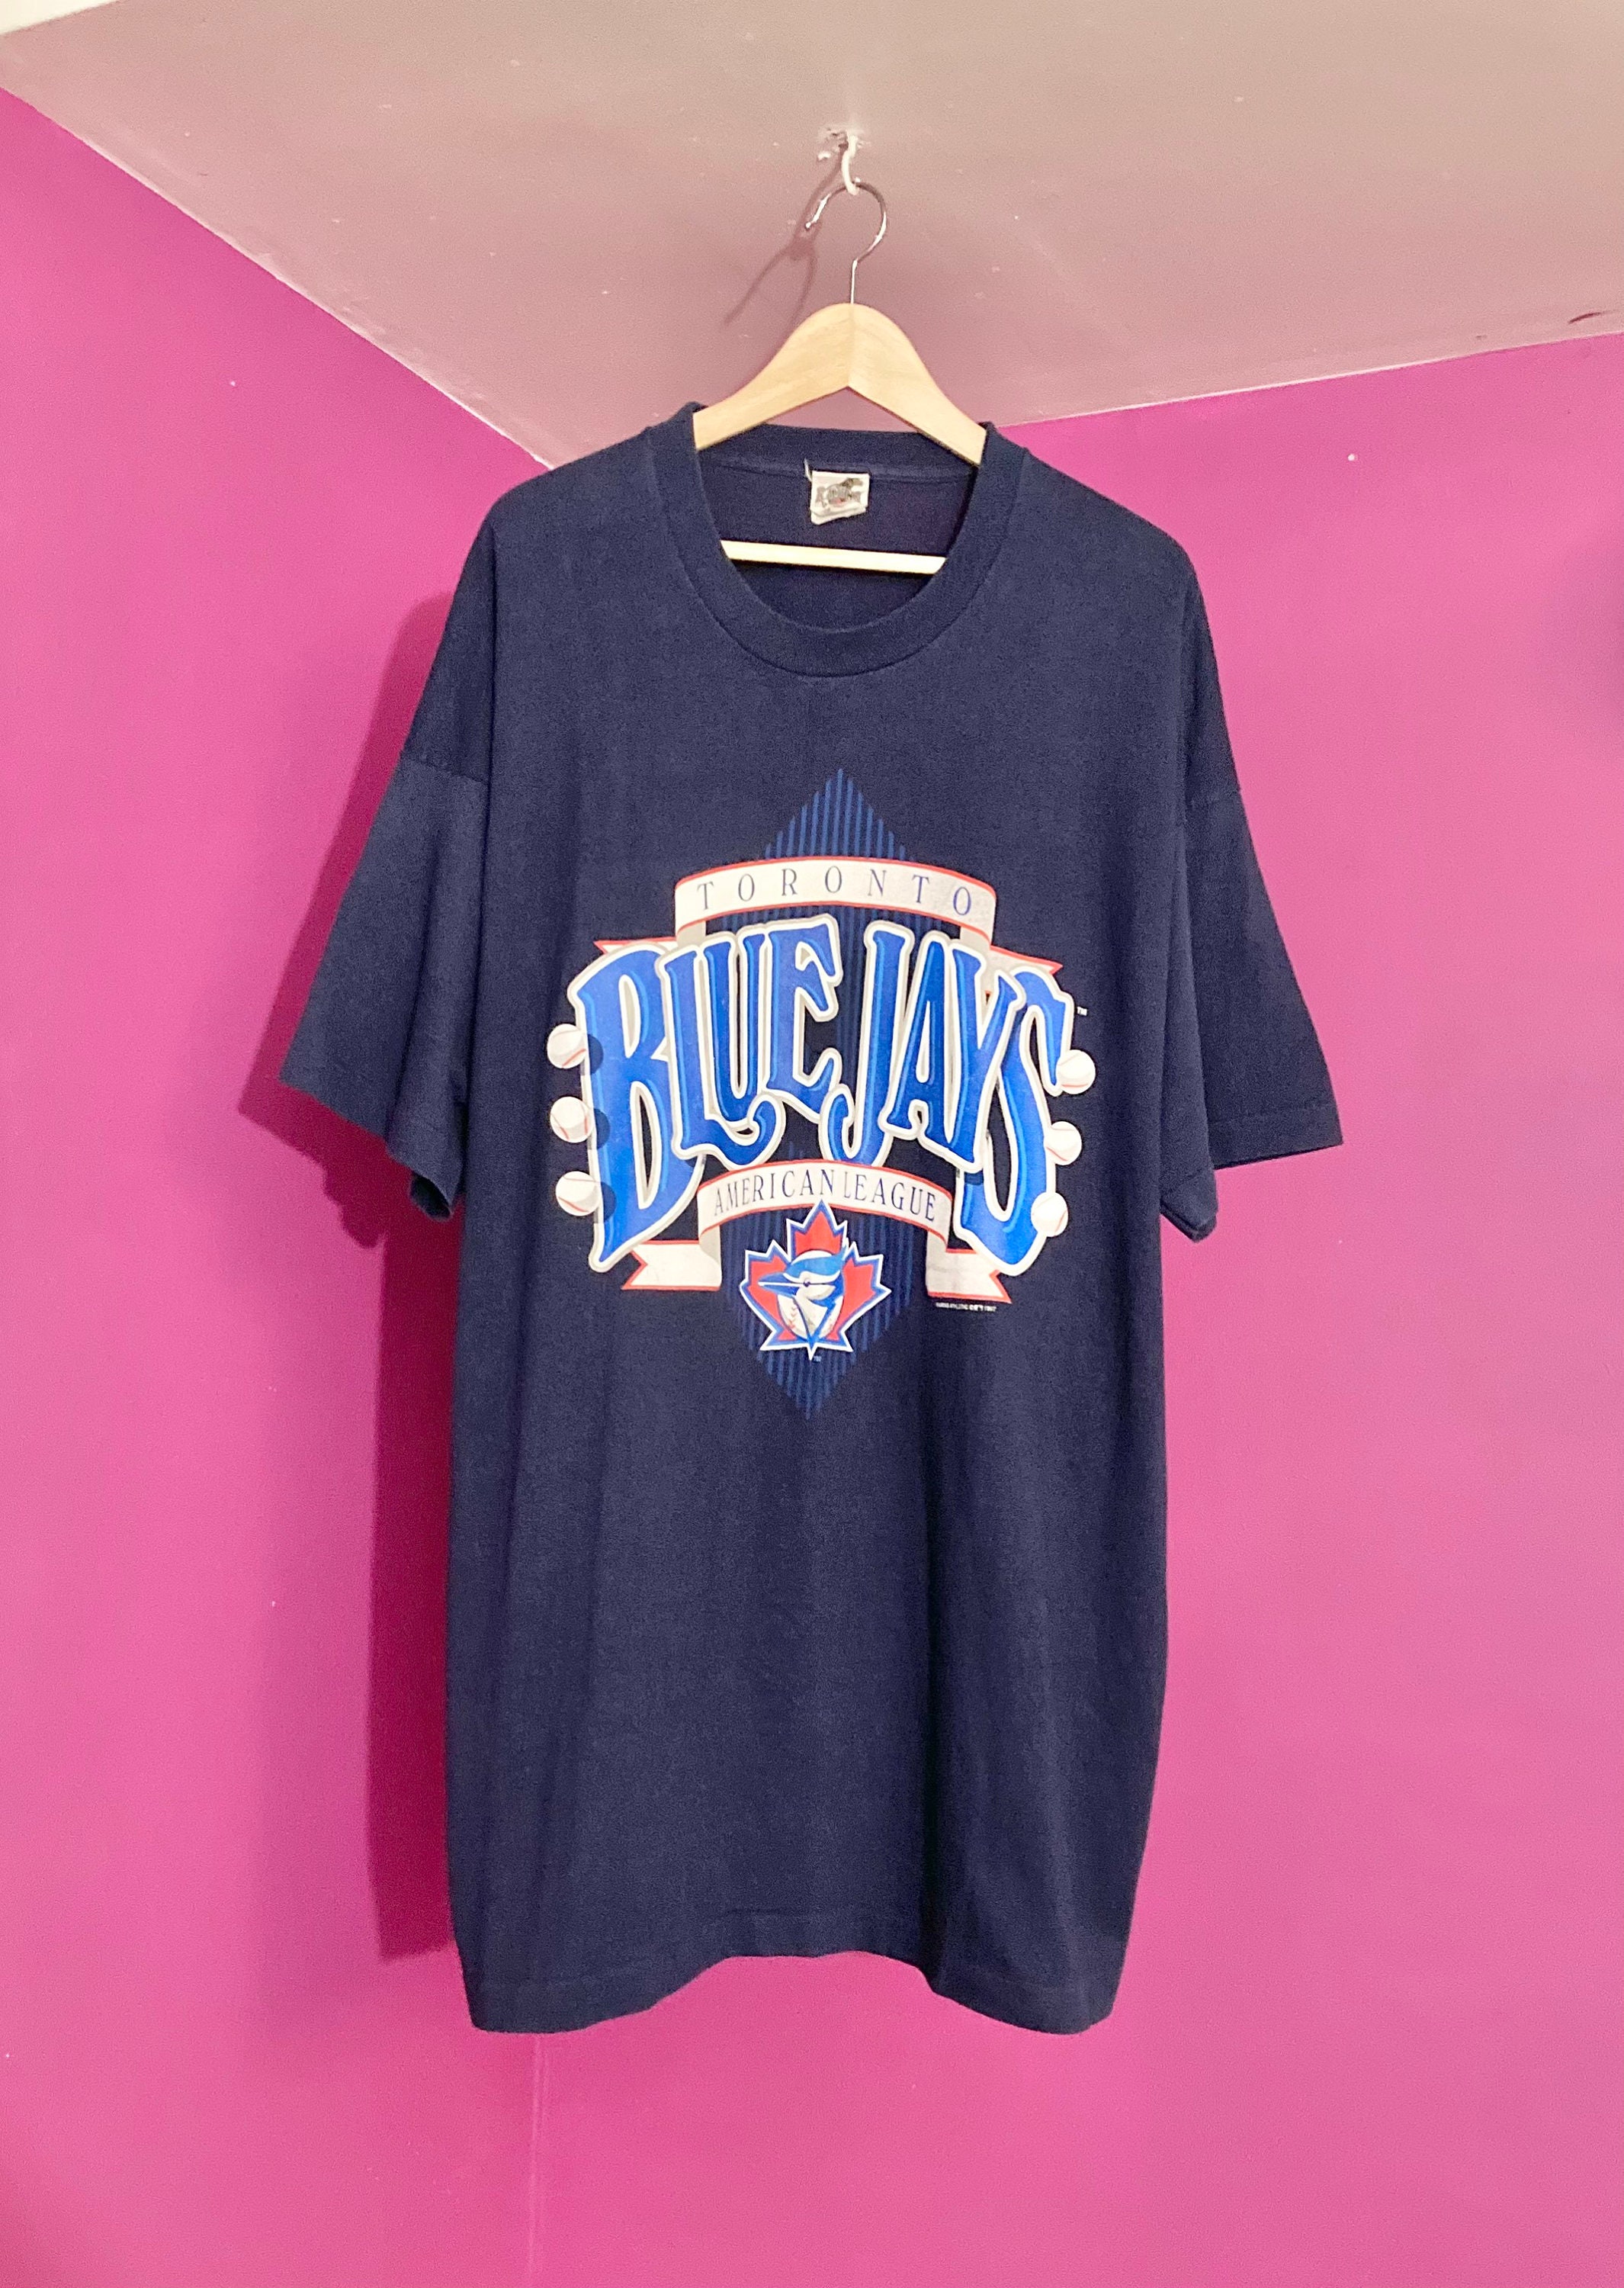 3XL Toronto Blue Jays 1997 Vintage T-Shirt | Etsy